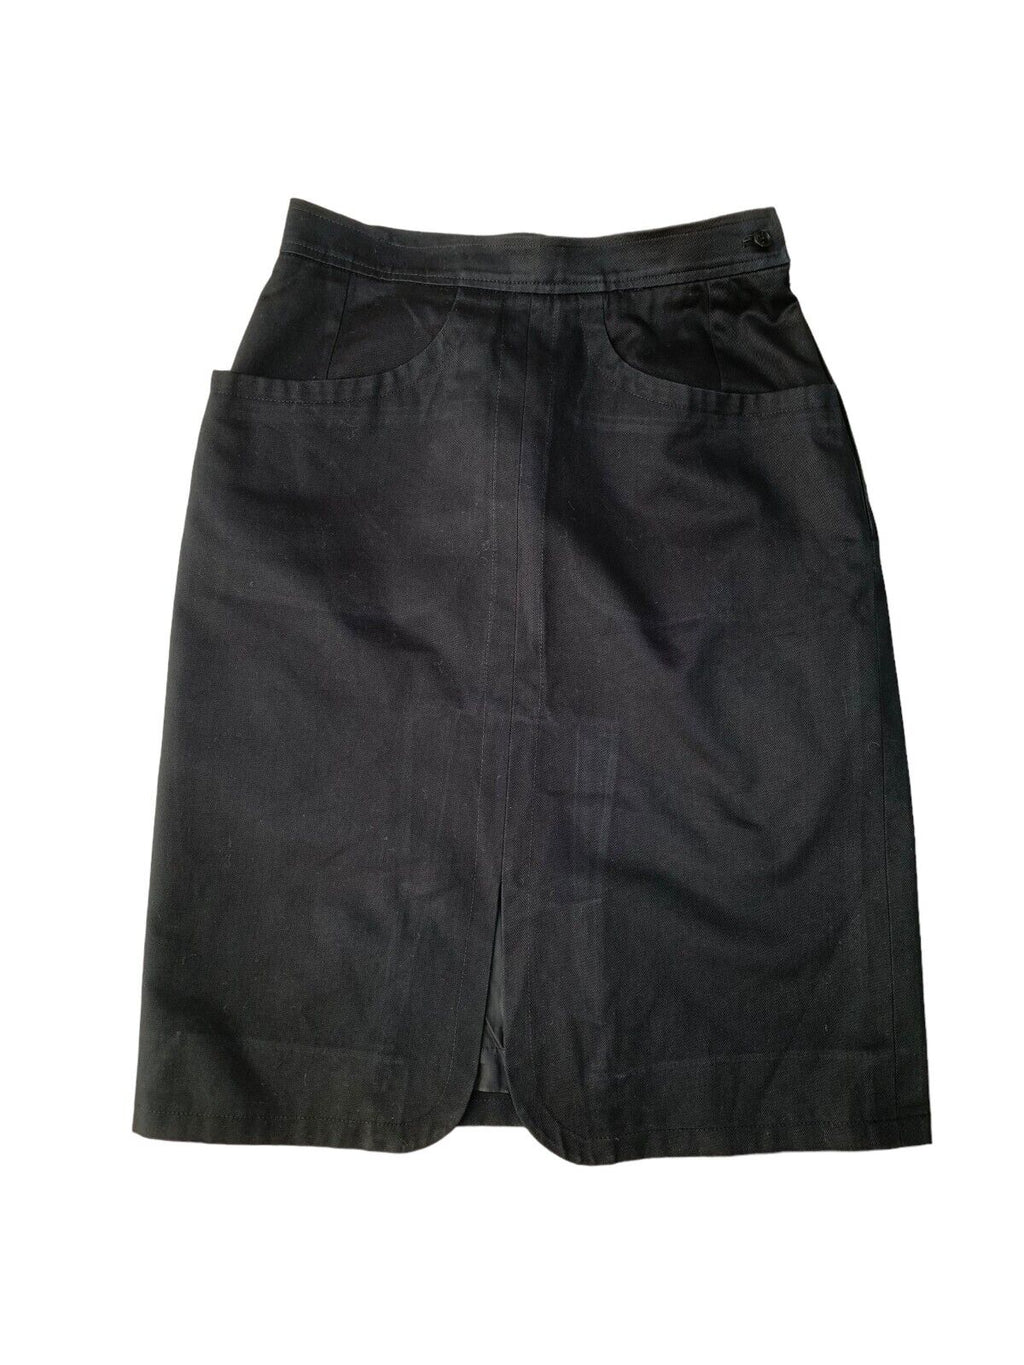 Rive Gauche Vintage Archive Black Skirt